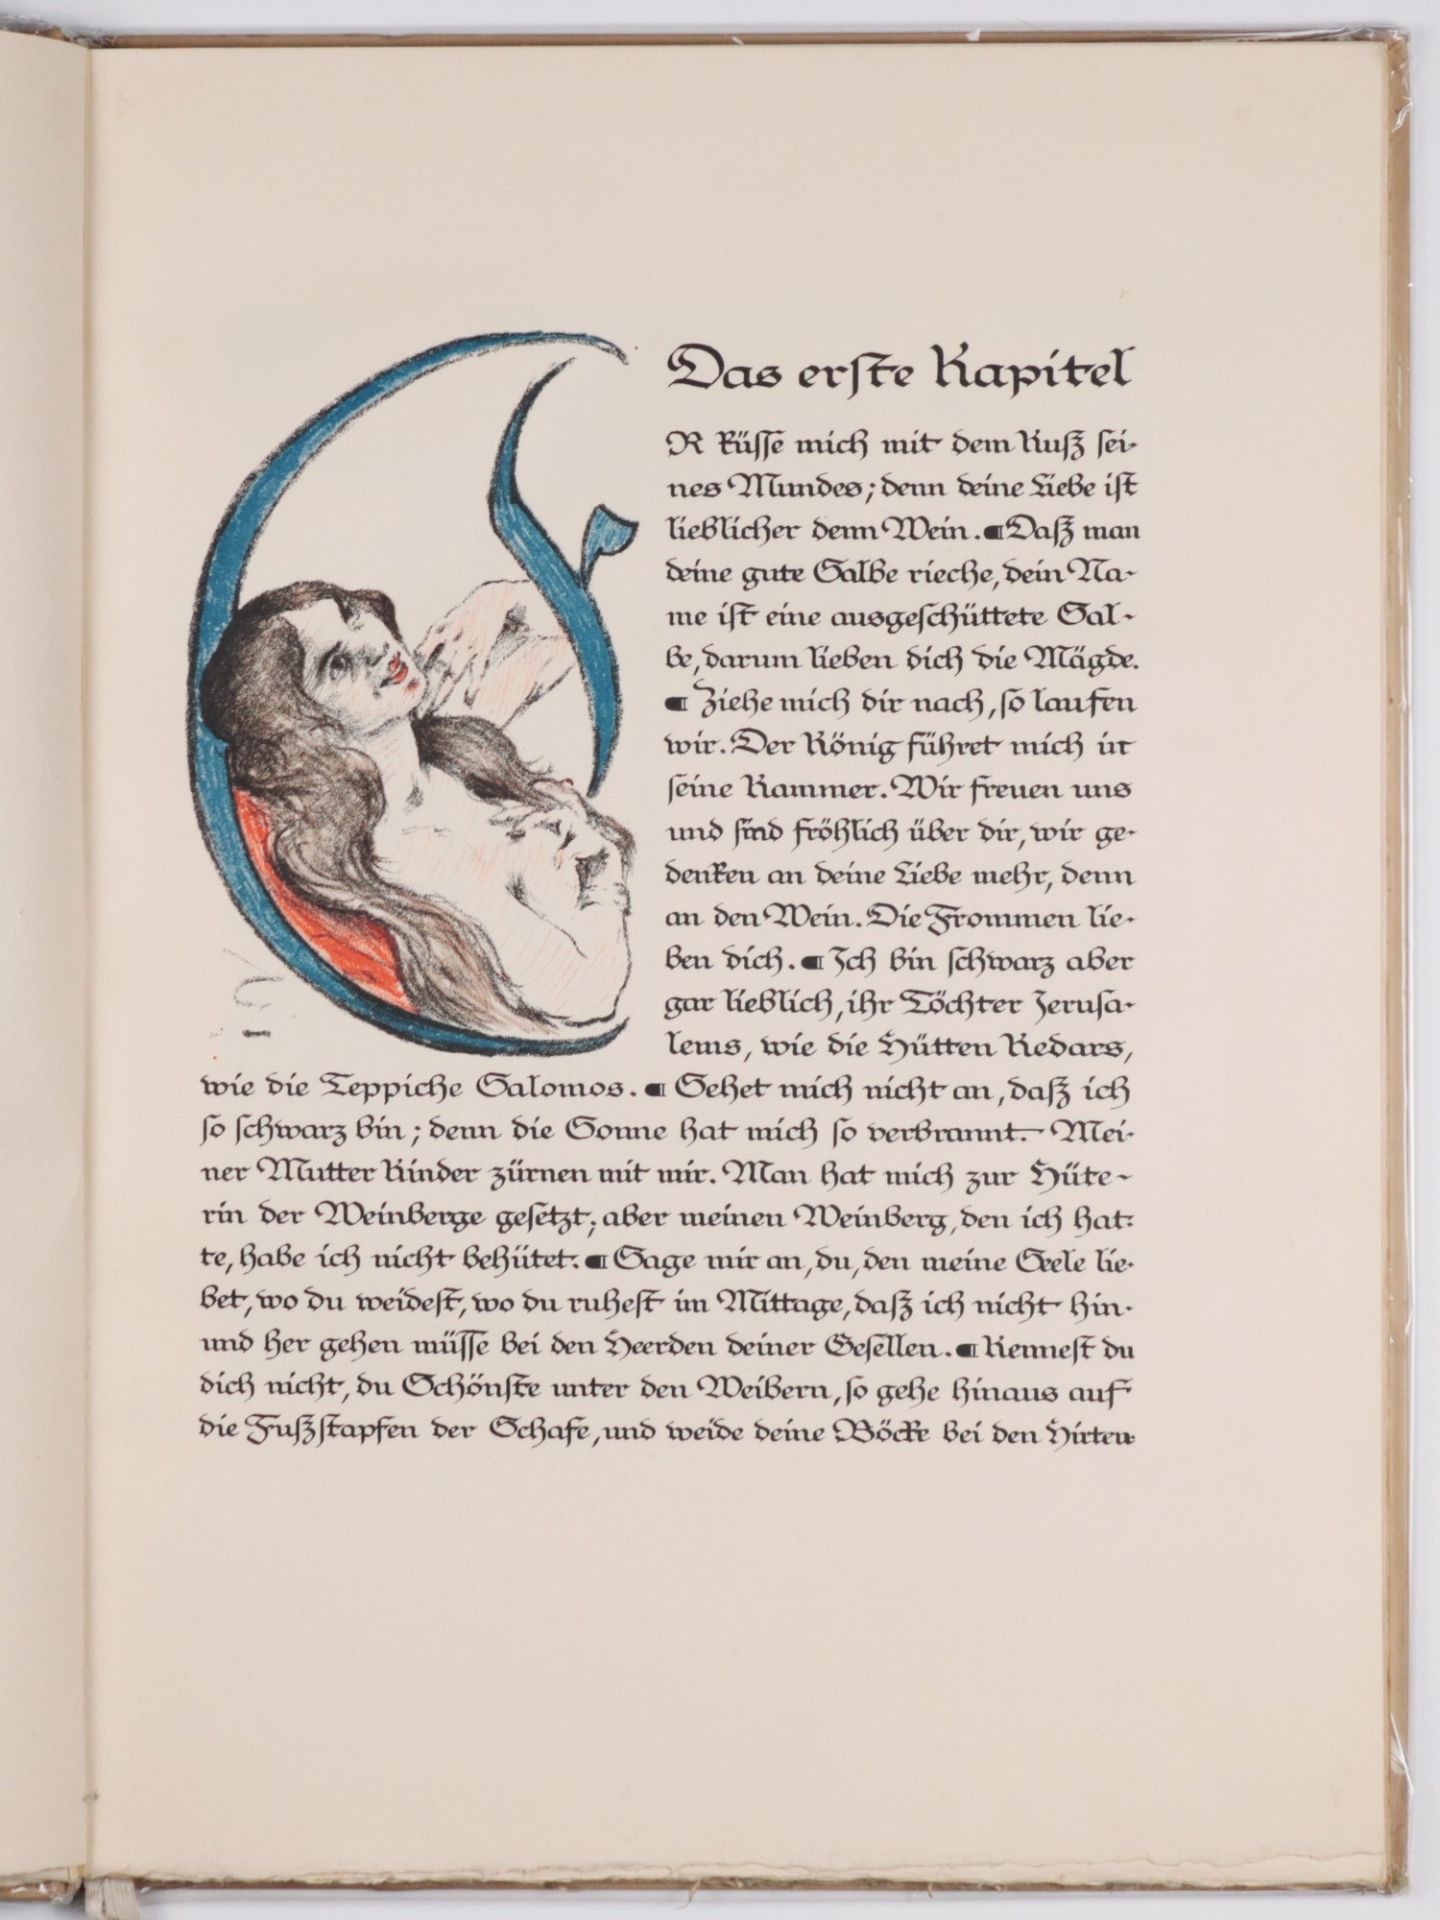 Corinth, Lovis - "Das Hohe Lied" 1848 Tapiau - 1925 Zandvoort, dt. Maler, Radierer u. Lithograph, - Bild 5 aus 22